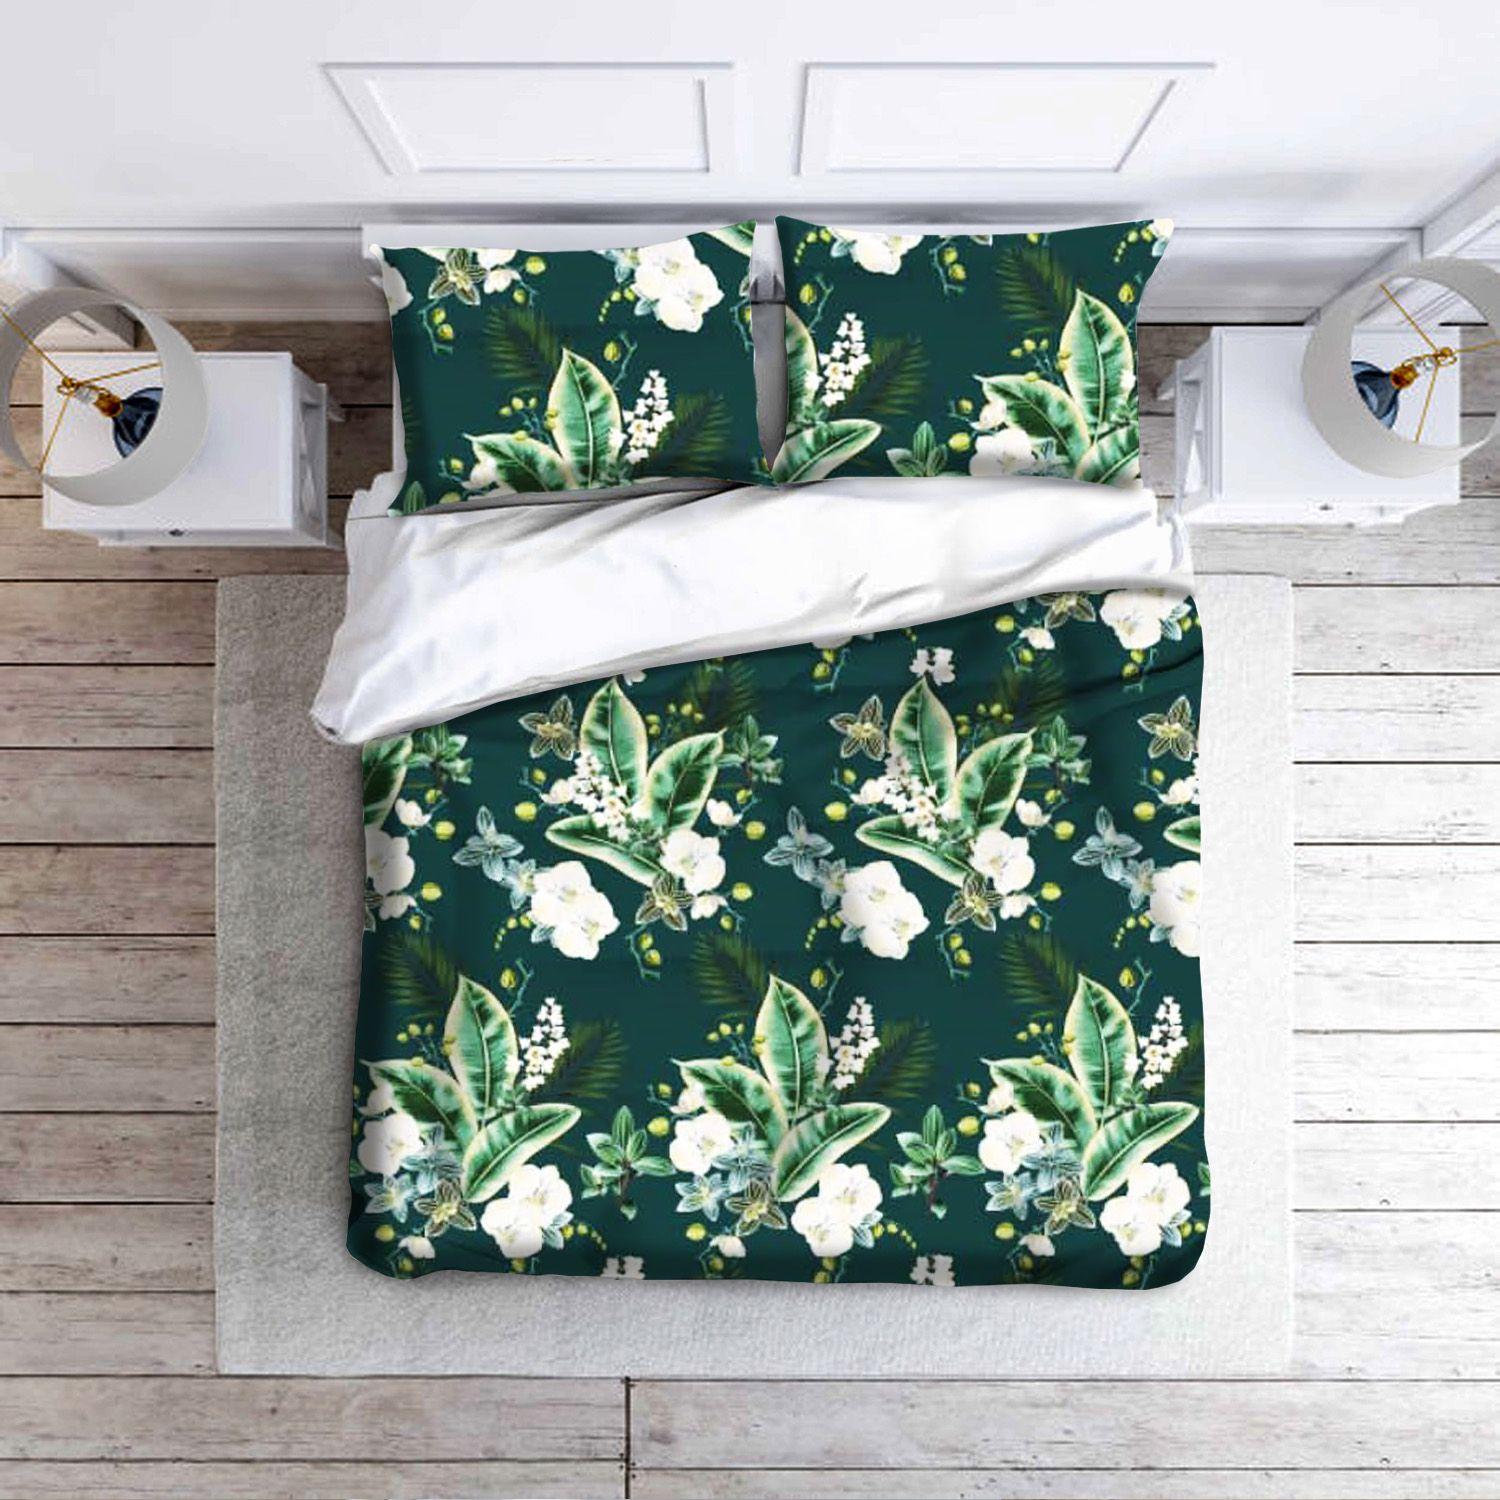 Cotton bed linen set 160x200 cm - bottle green